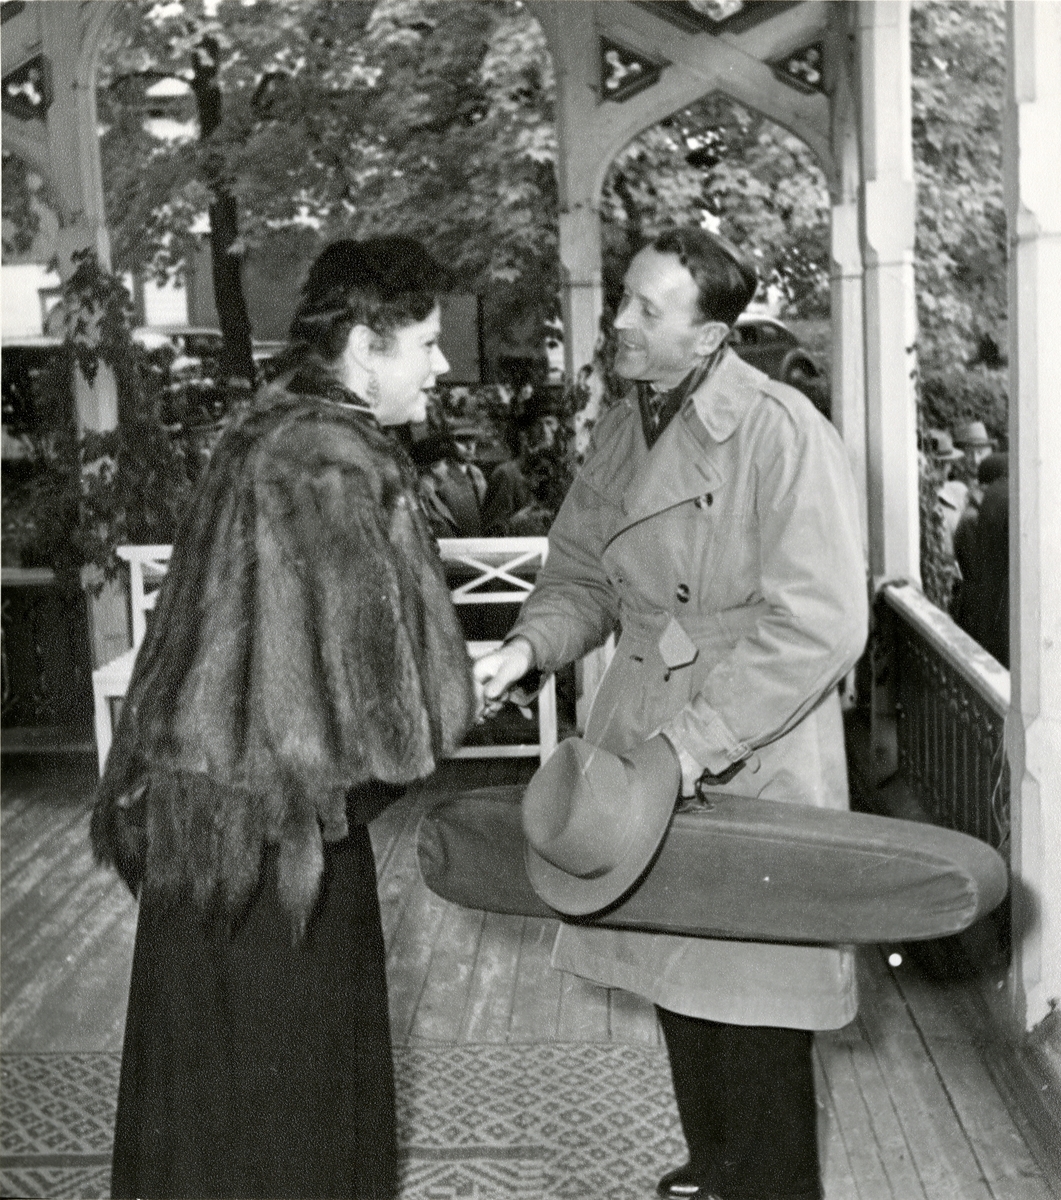 Victoria hilser på langeleikspilleren Olav Snortheim.
Bildet er tatt på verandaen utenfor Havestuen ved åpningen av Musikkhistorisk Museum.